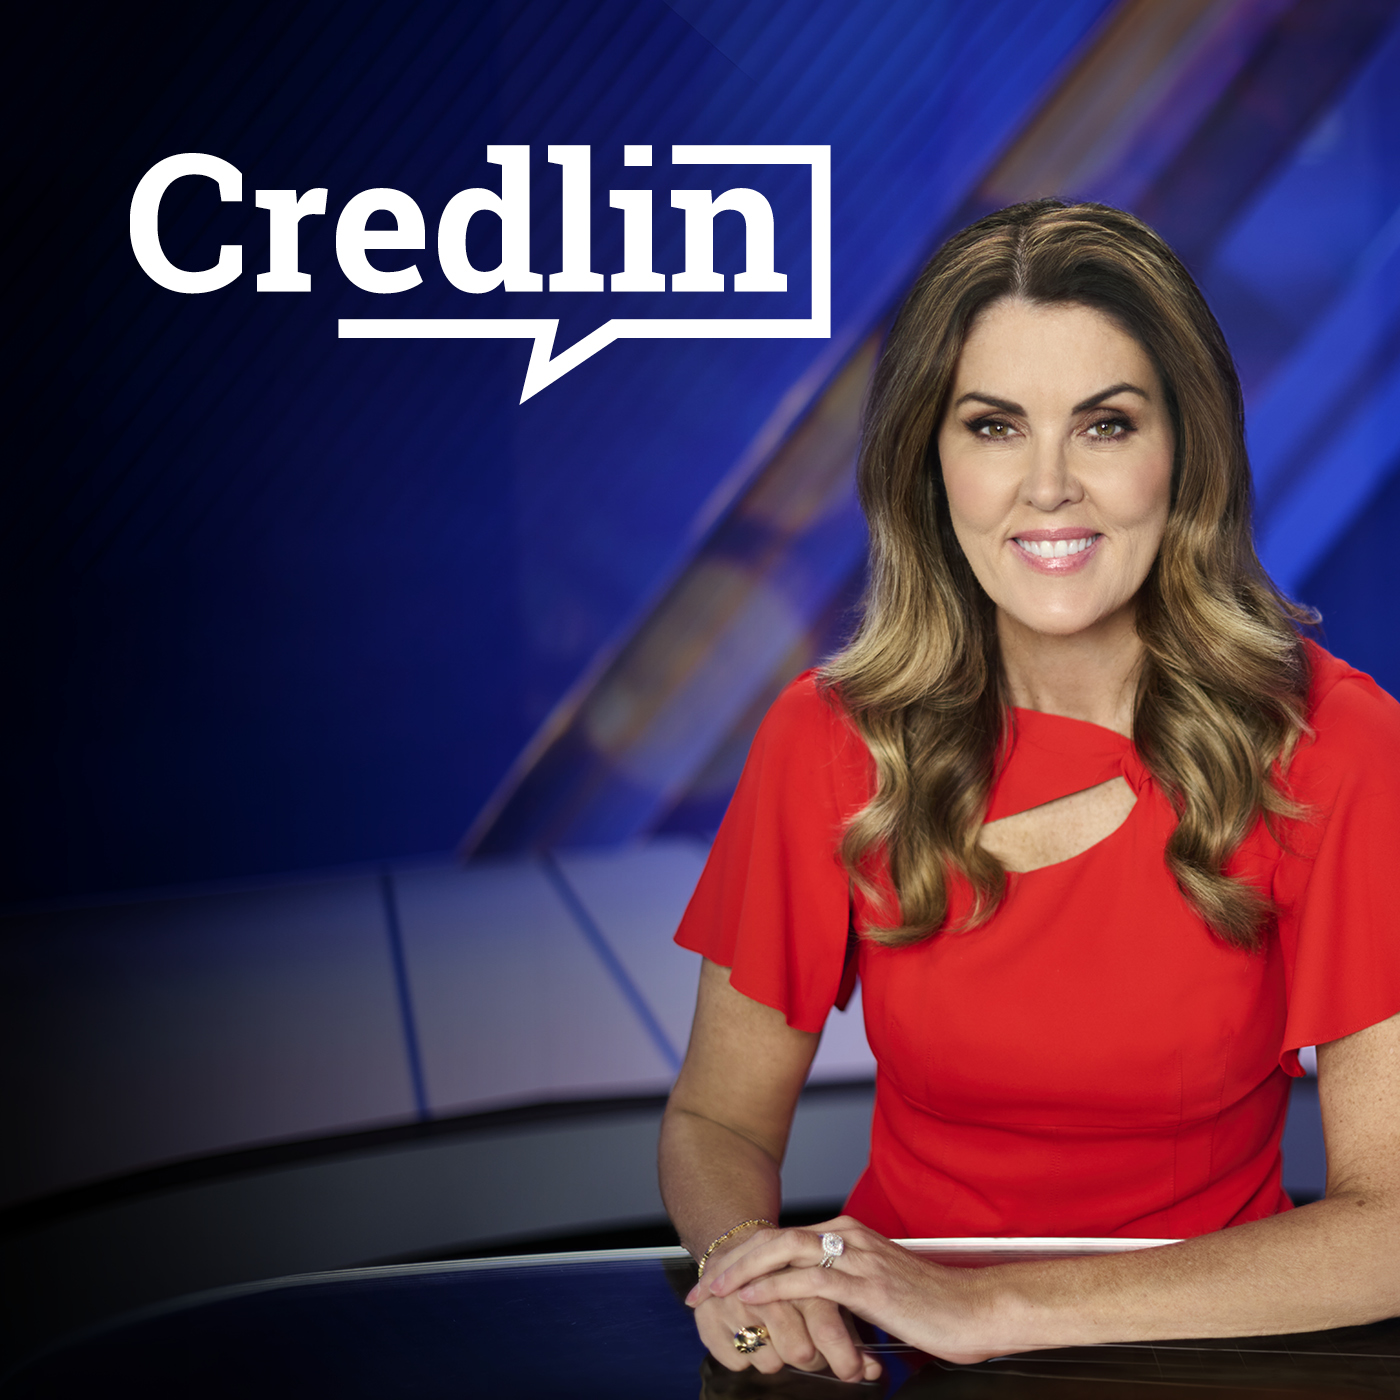 Credlin, Thursday 17th June